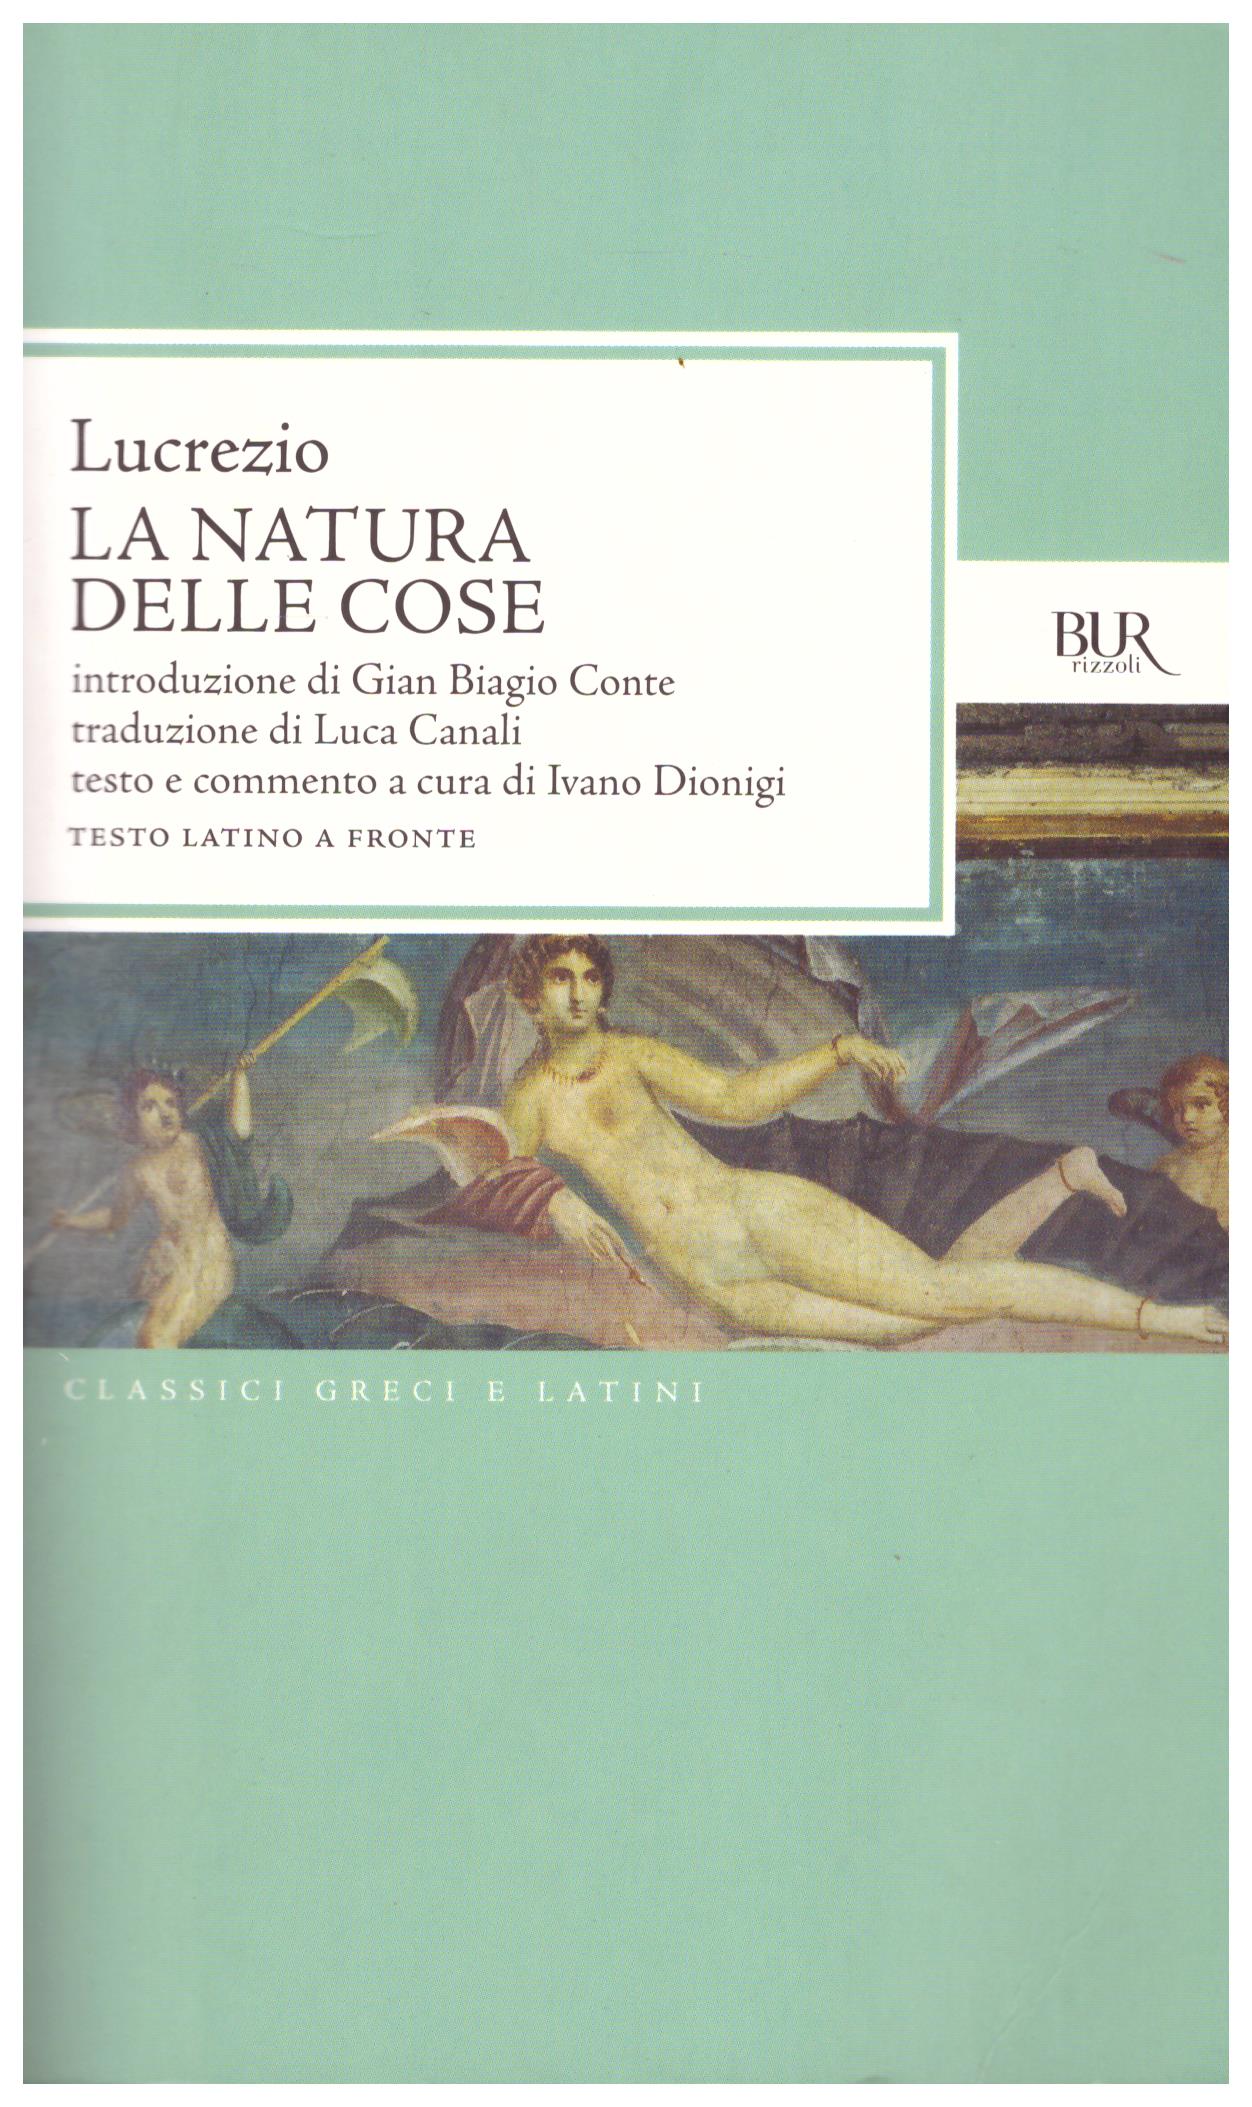 Titolo: La natura delle cose Autore: Lucrezio Editore: Bur, 2012